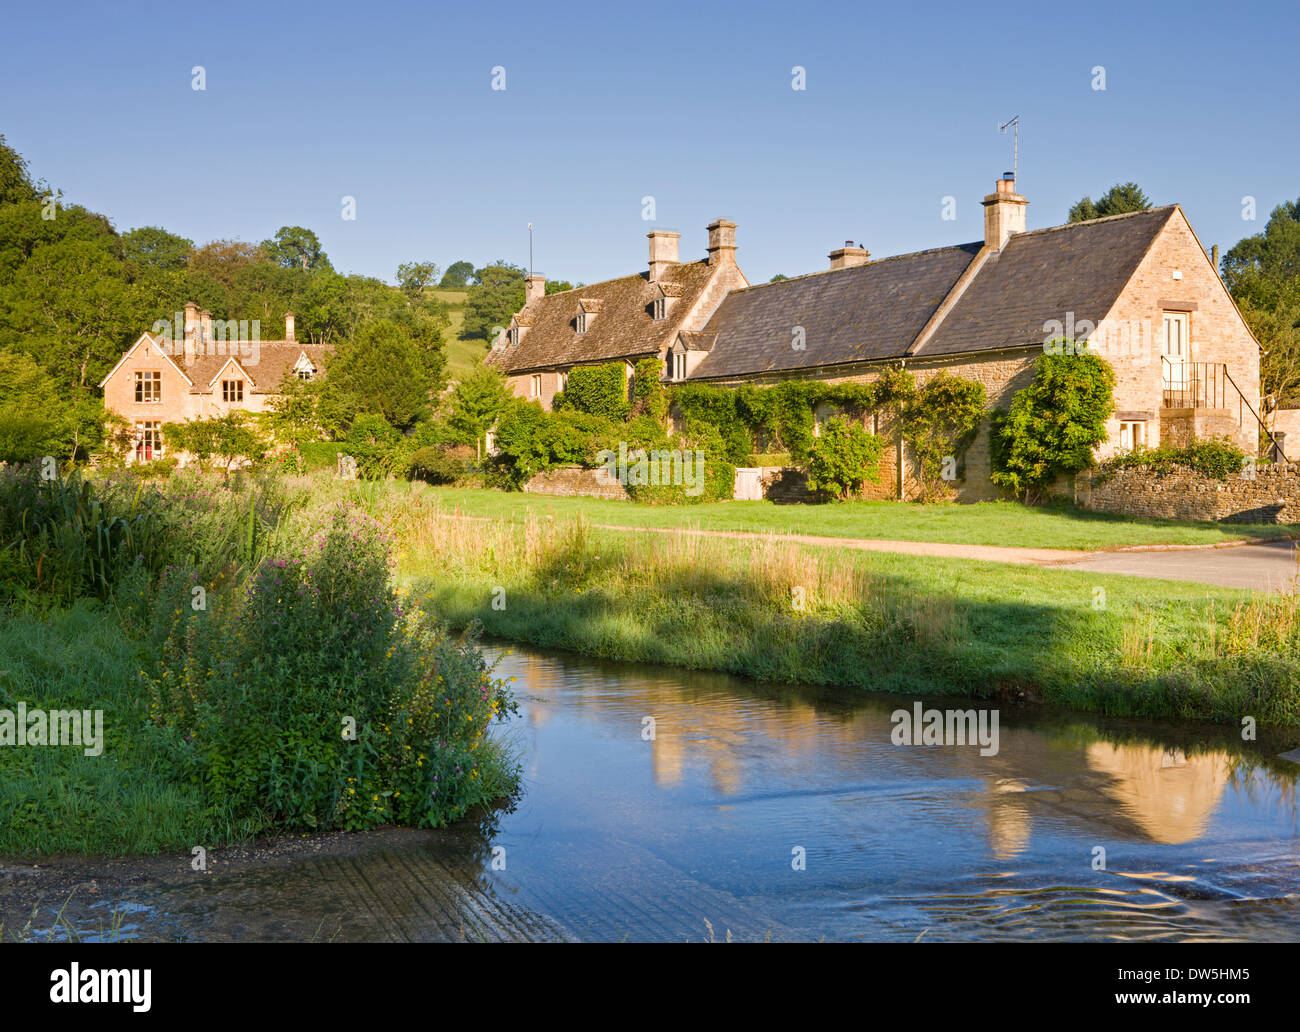 Malerische Bauernhöfe neben dem Fluss Auge in die Cotswolds Dorf des oberen Schlachtung, Gloucestershire, England. Stockfoto